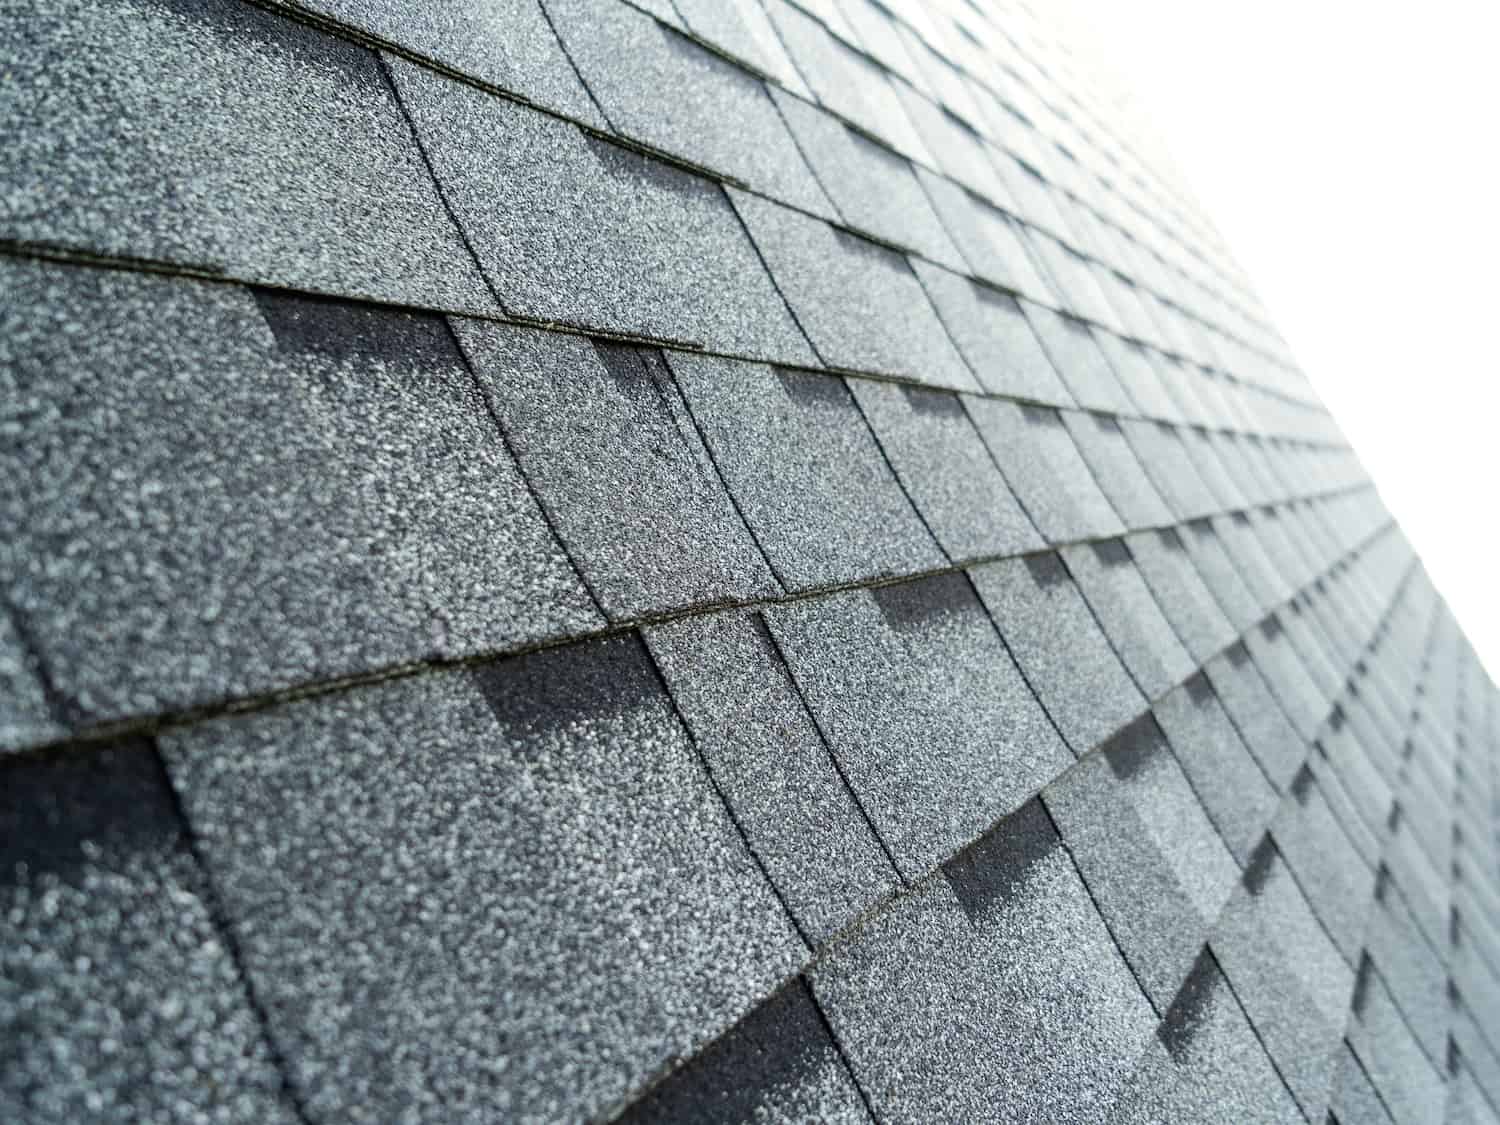 roof repair cost asphalt shingle material